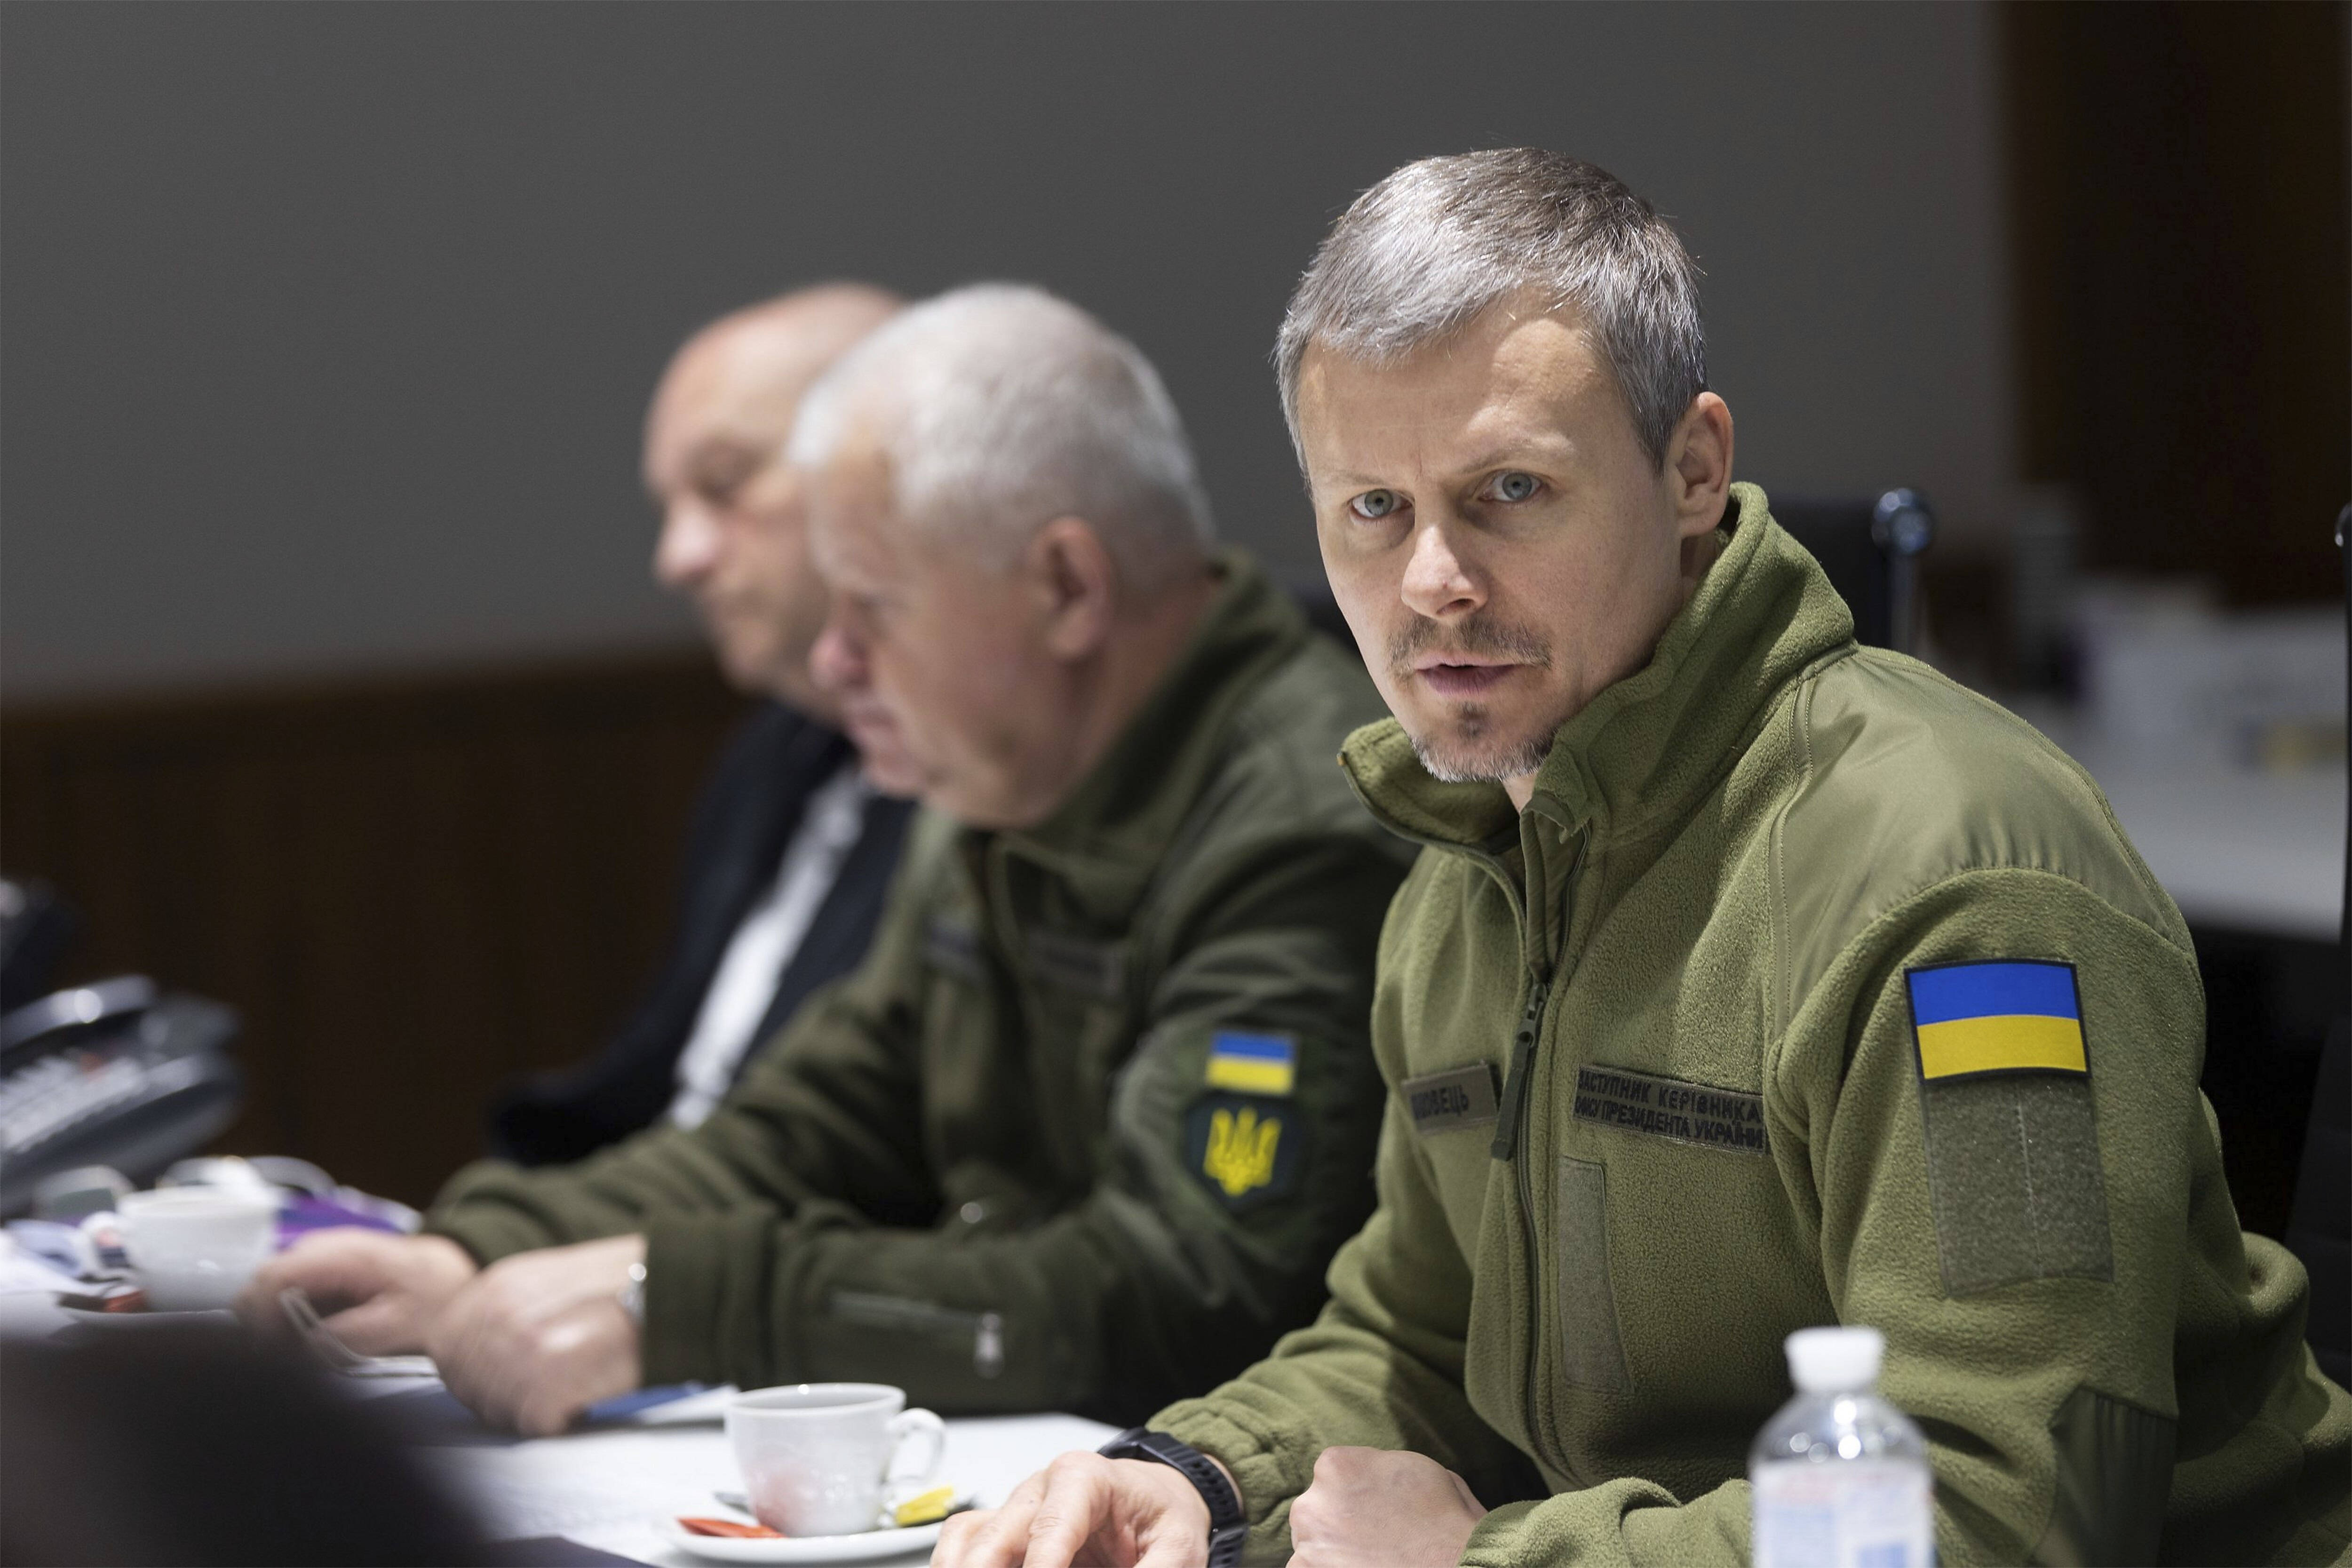 Rückeroberung der Krim noch vor Weihnachten! Ukraine-General Wolodymyr Hawrilow glaubt an schnelle Rückeroberung